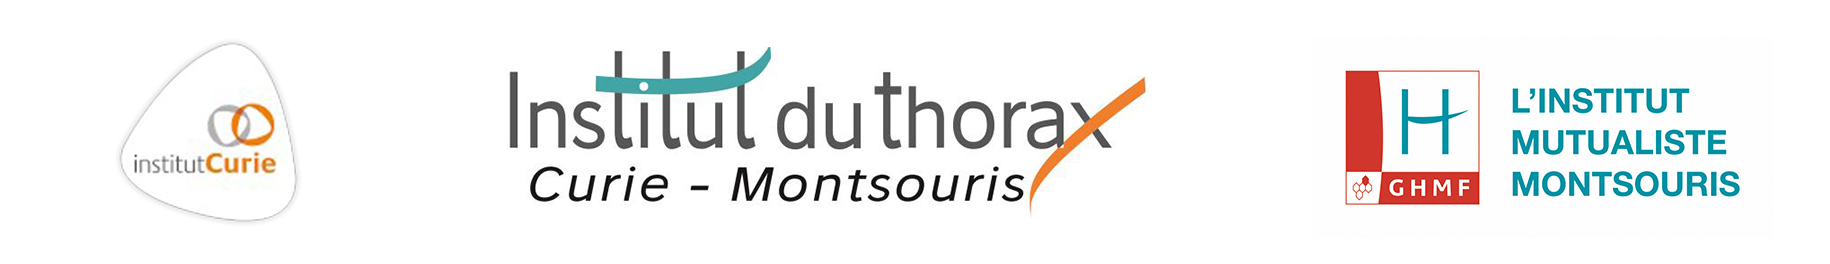 Institut du Thorax - Curie - Montsouris